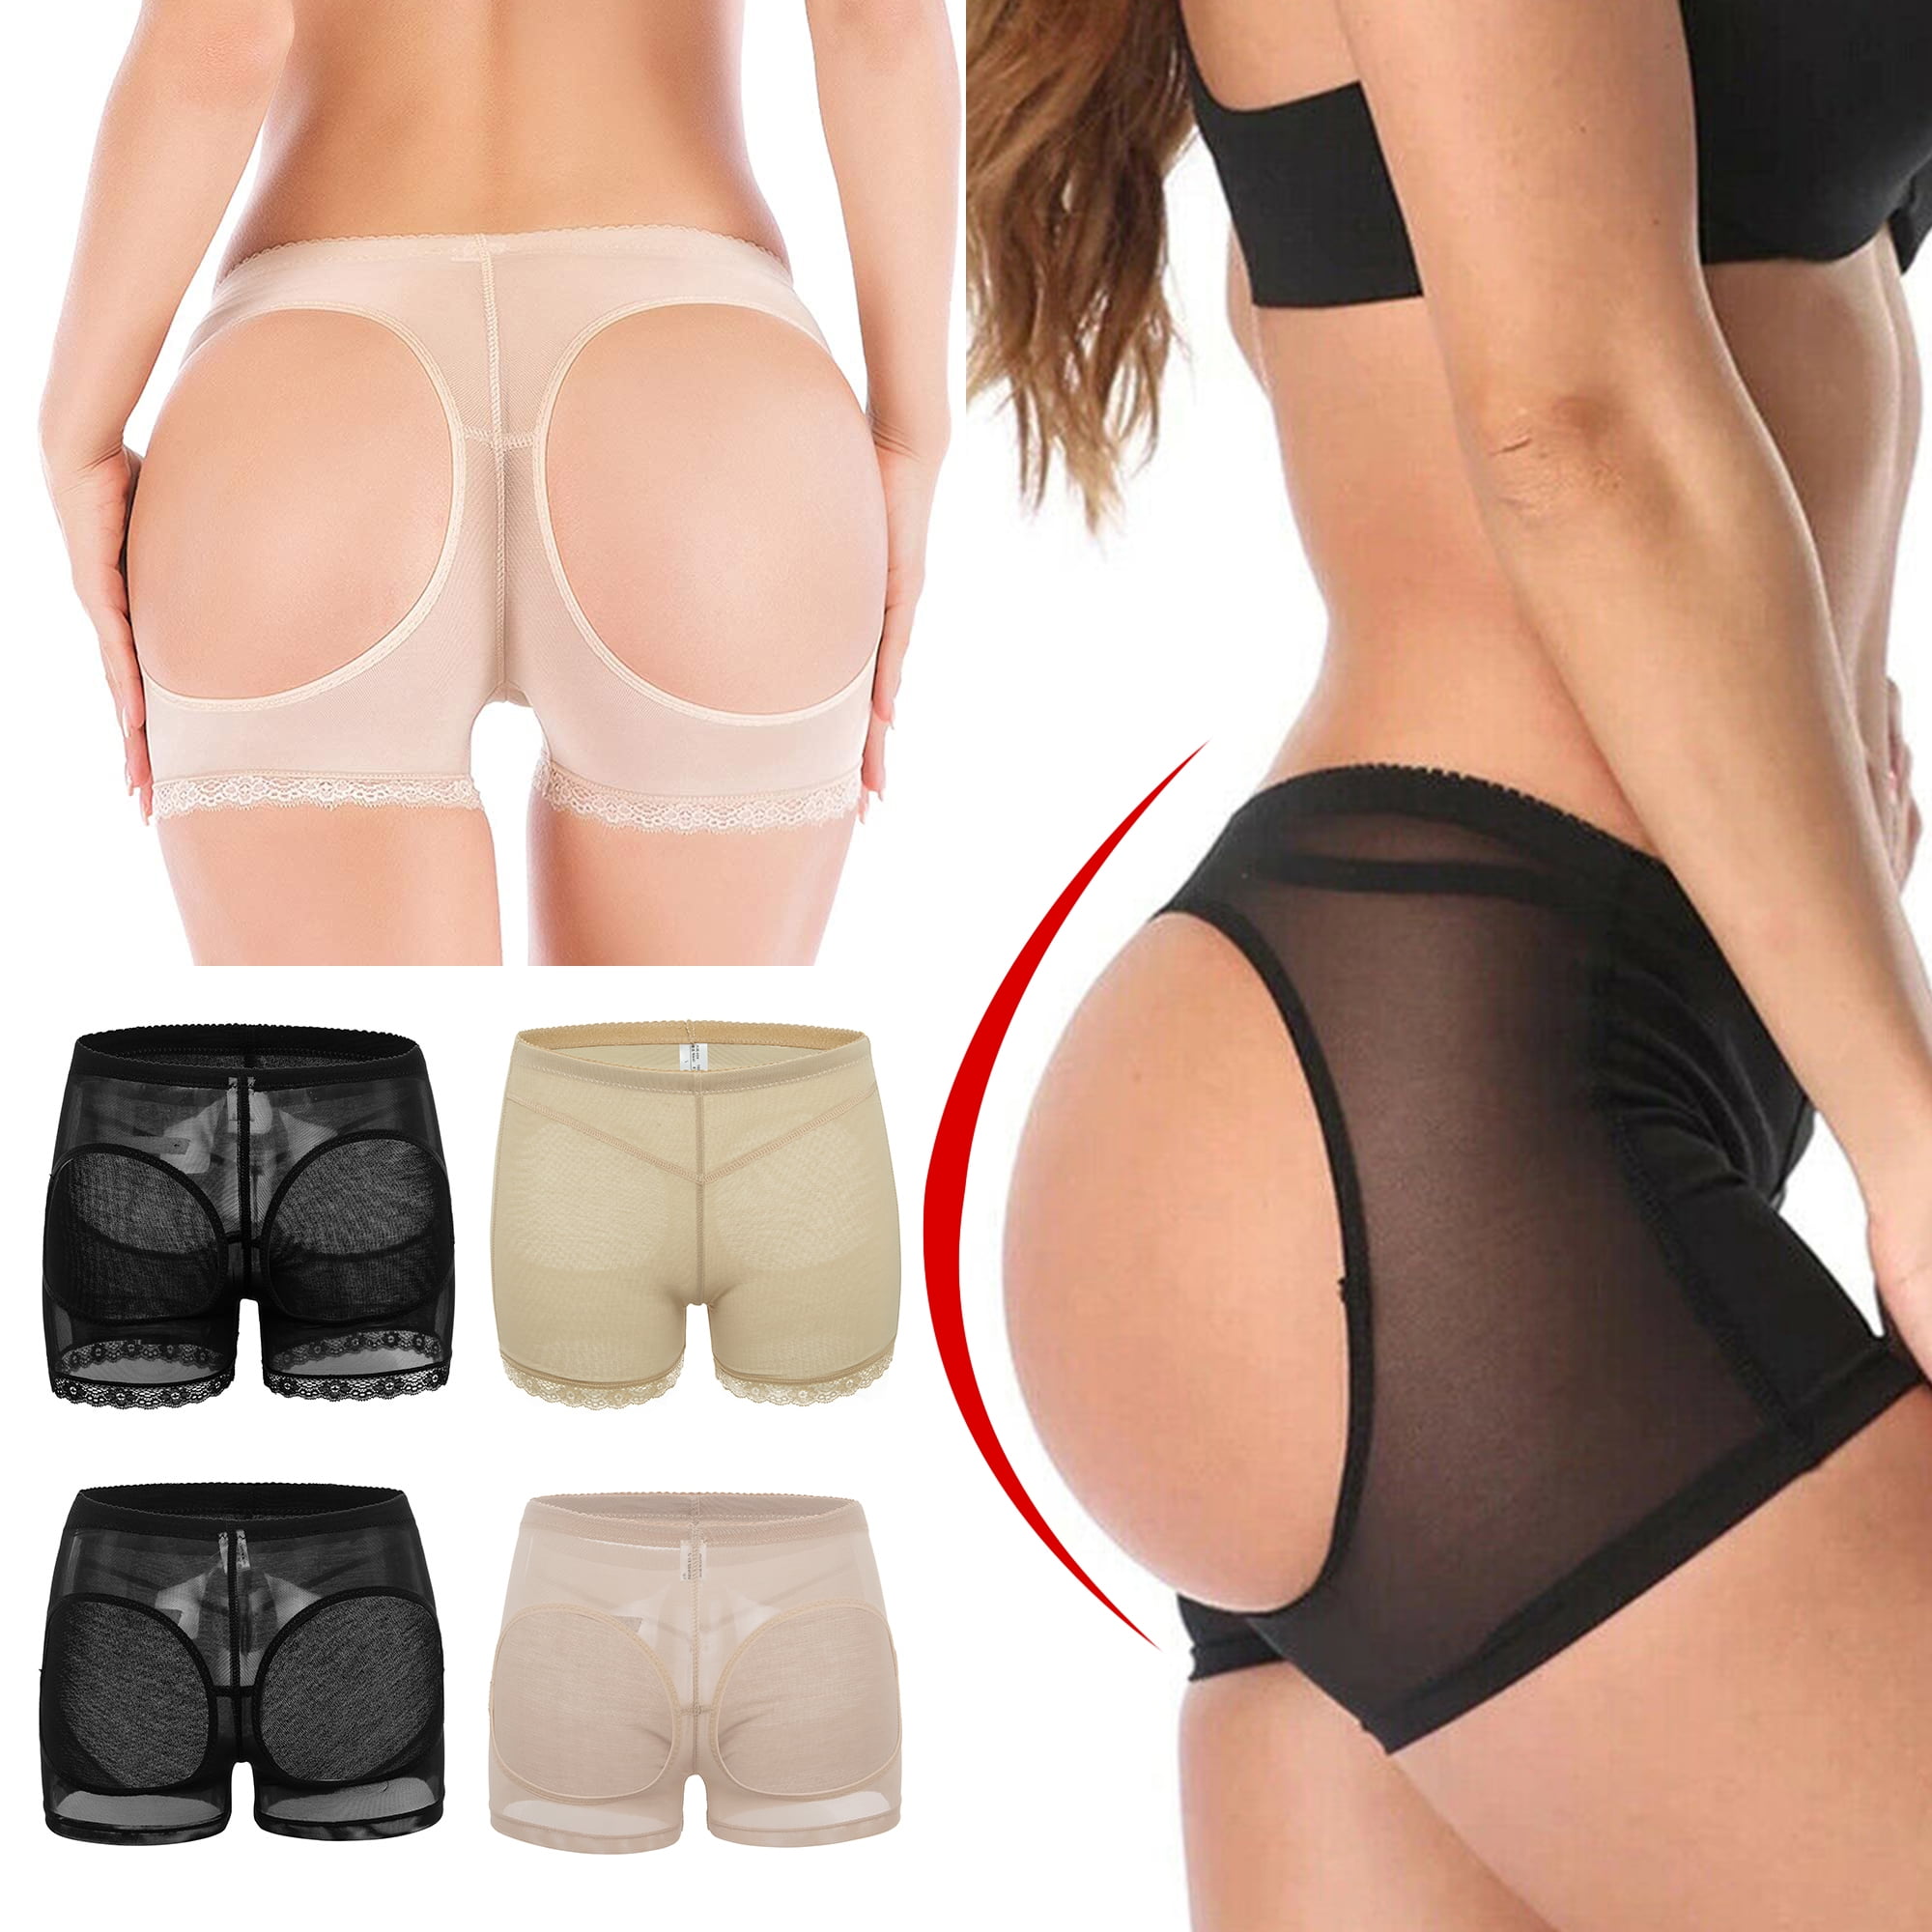 Butt Lifter Tummy Control Butt Lifting Panties Lift Underwear Booty Lifter Bigger Butt Shaper for Women Beige L 276e2c29 78df 4206 9bec 2a15270debc2.feb3a4e78d7c0ee6ba56bfa962ac507b